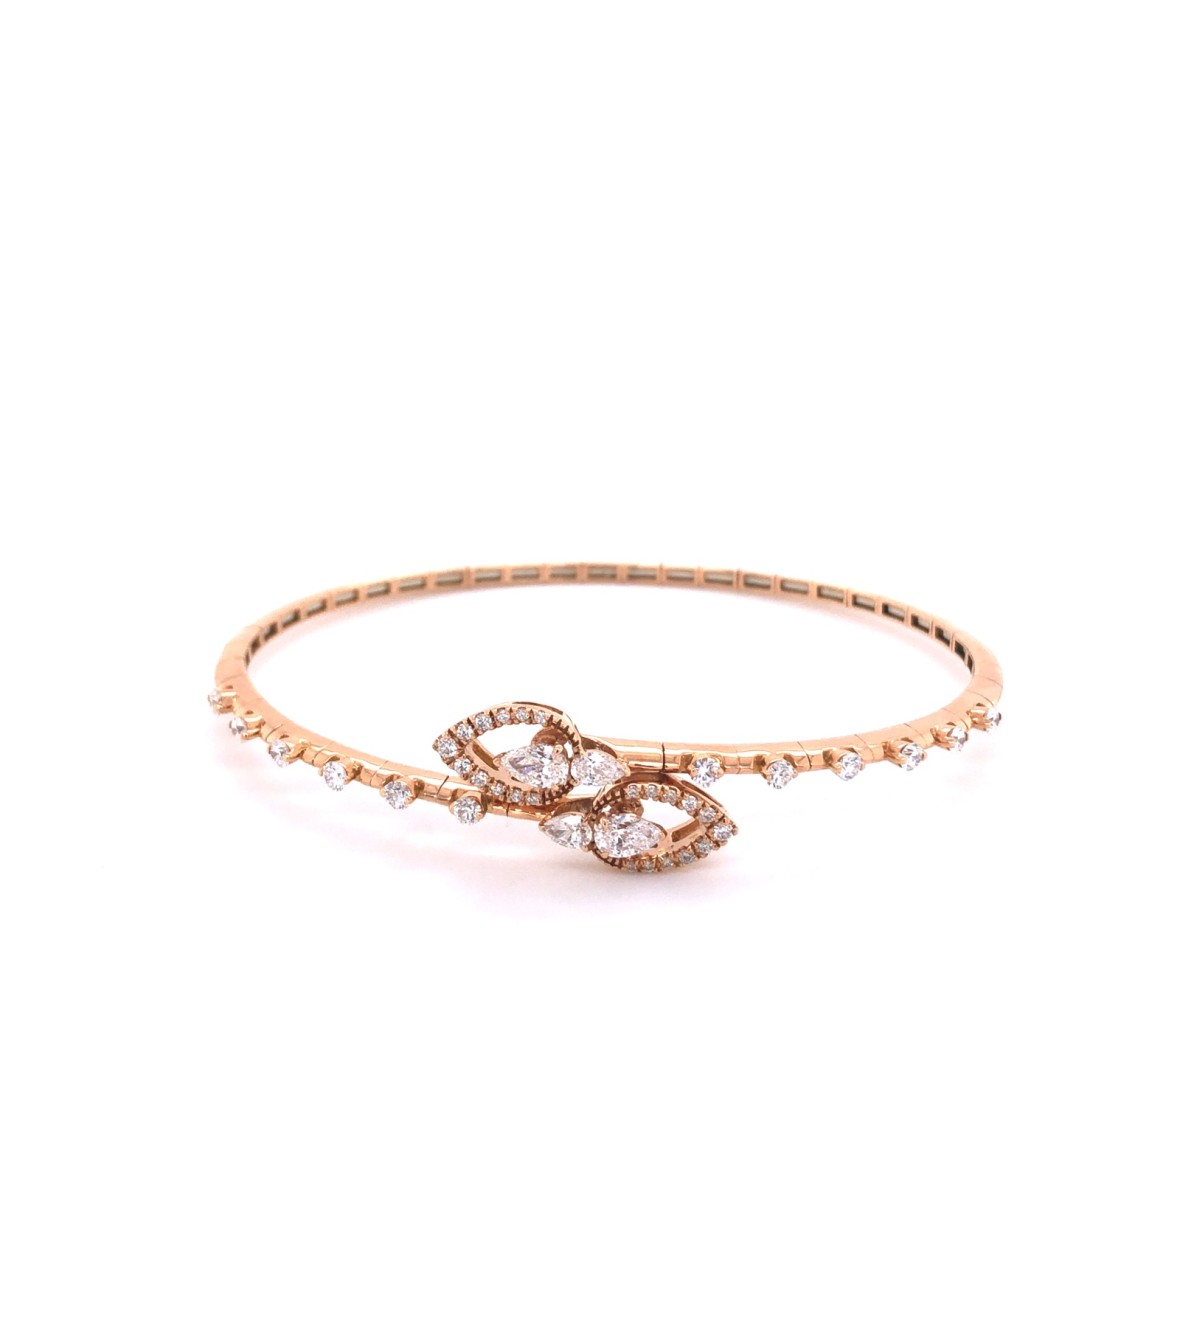 Pink Gold Bracelet with Diamonds BRX179BT-P by Casato